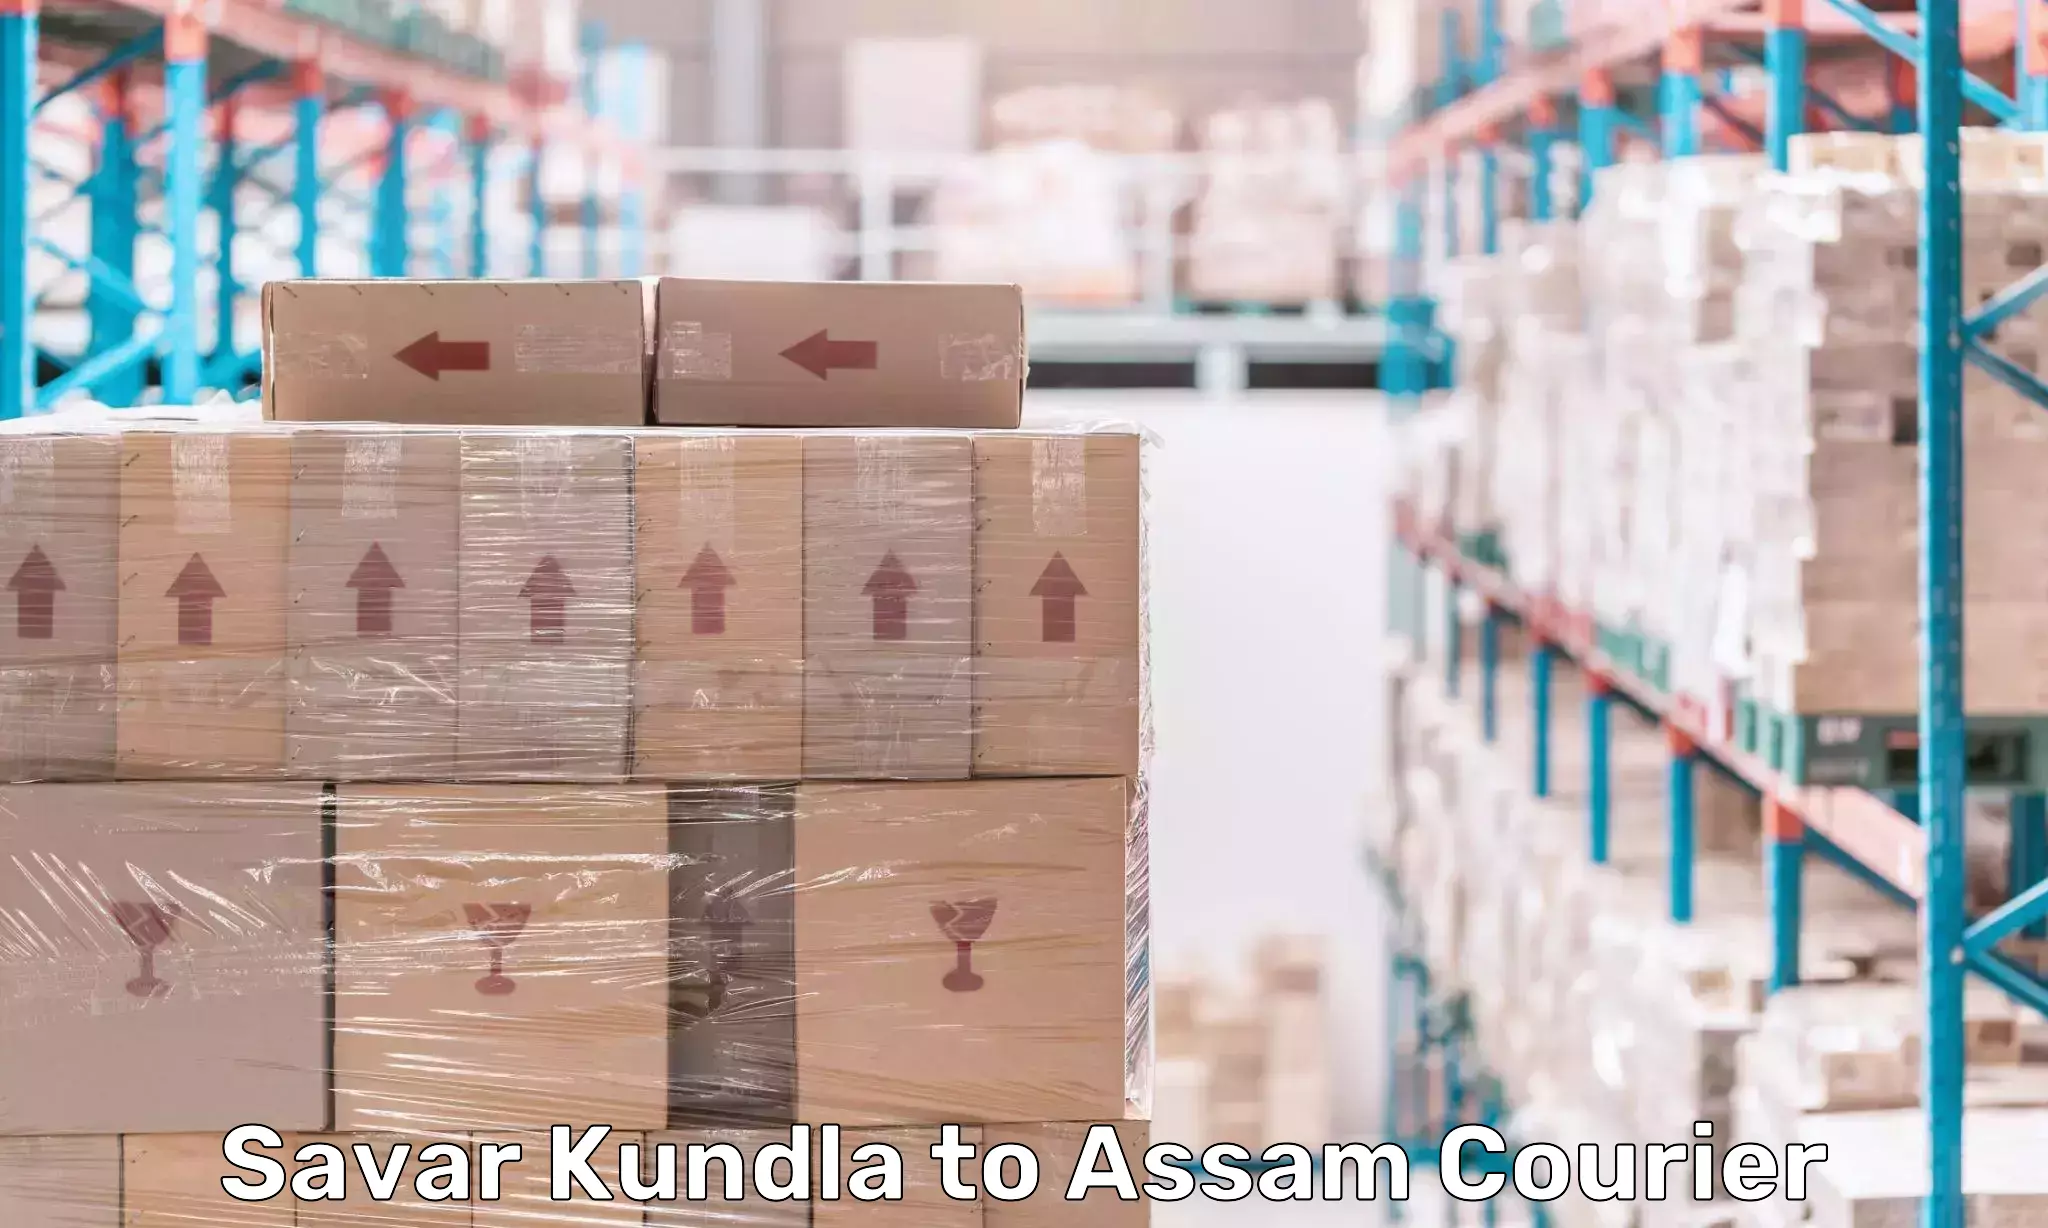 Reliable freight solutions Savar Kundla to Sivasagar